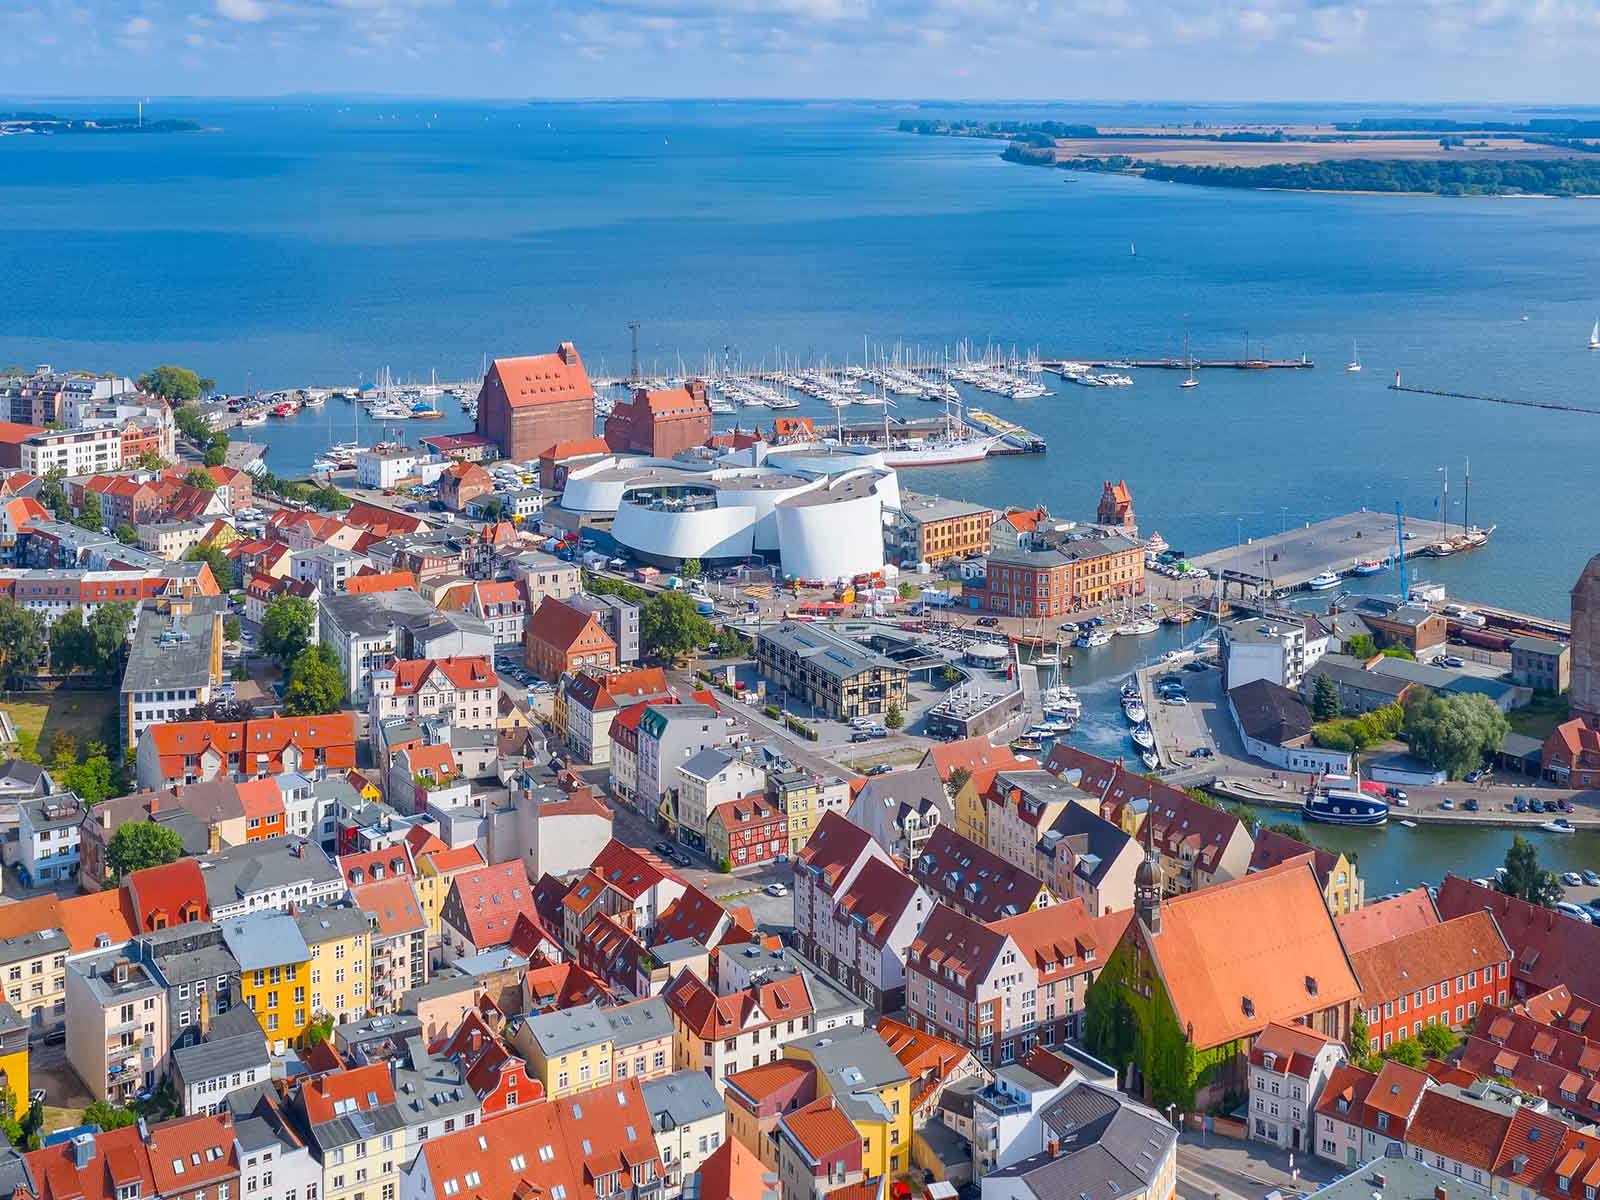 Durch die Meerenge zwischen Stralsund und Rügen ist das Wasser der Ostsee hier besonders ruhig.